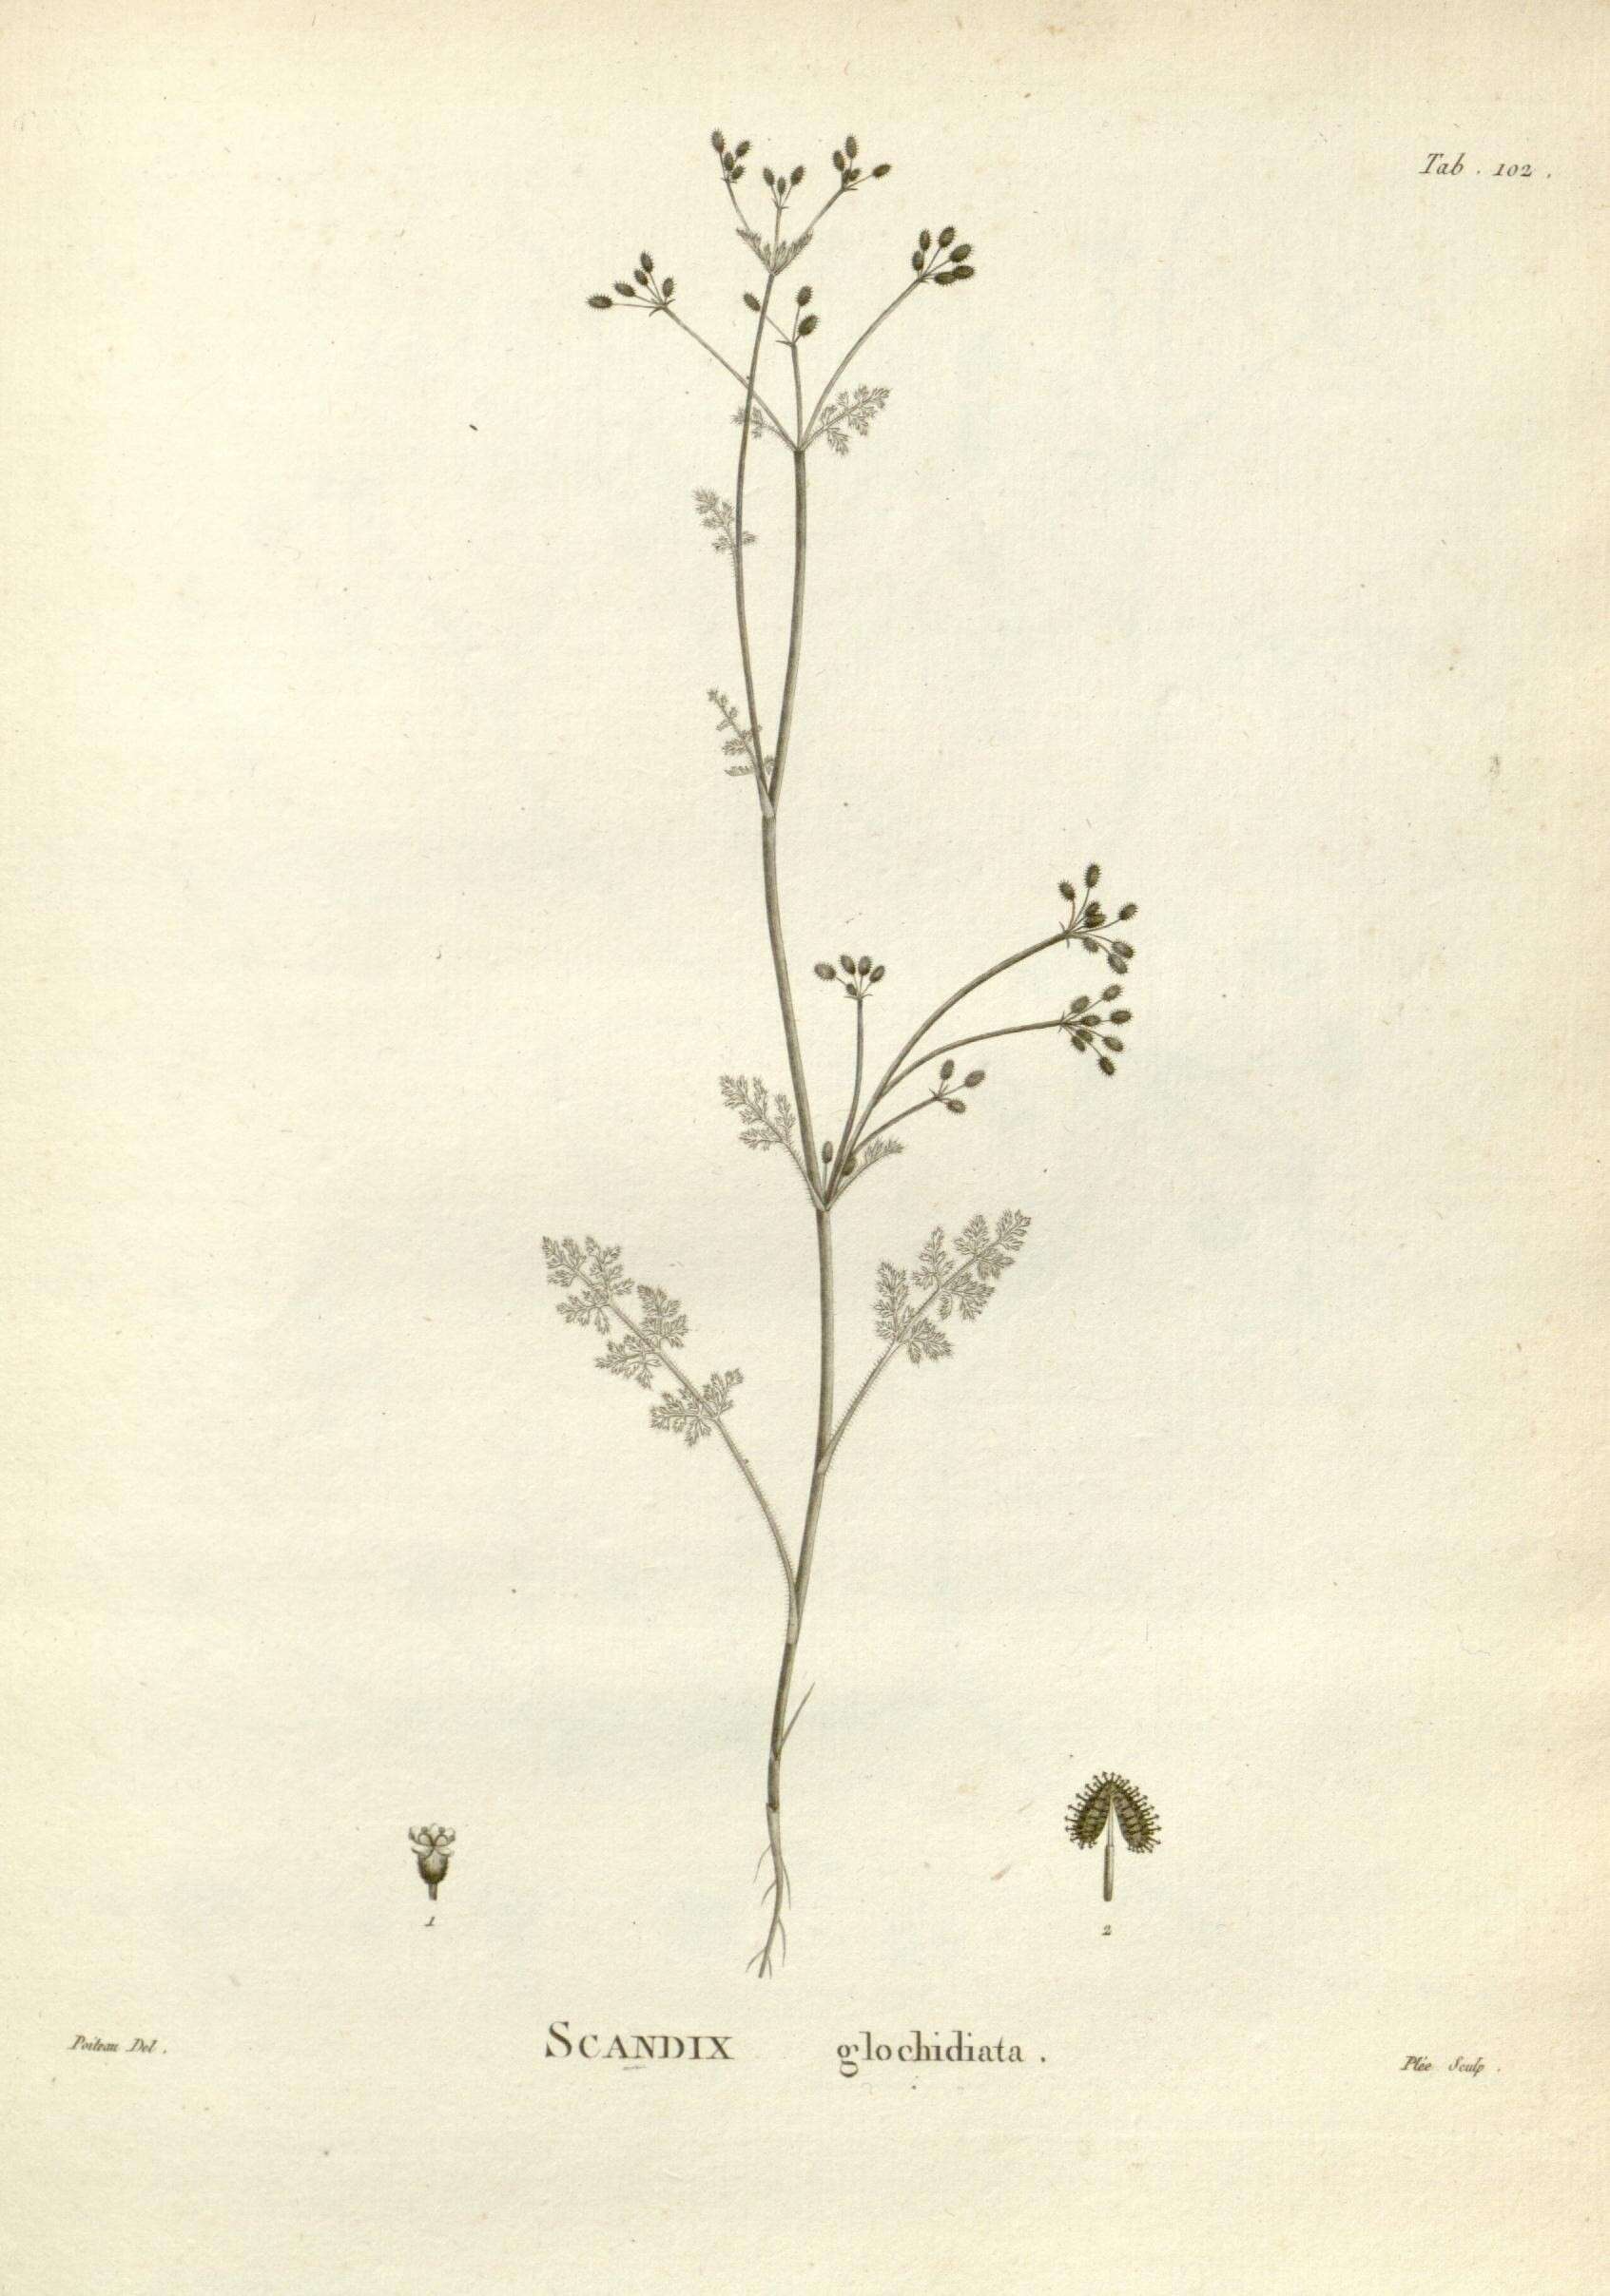 Image of Daucus glochidiatus (Labill.) Fischer, C. Meyer & Ave Lall.